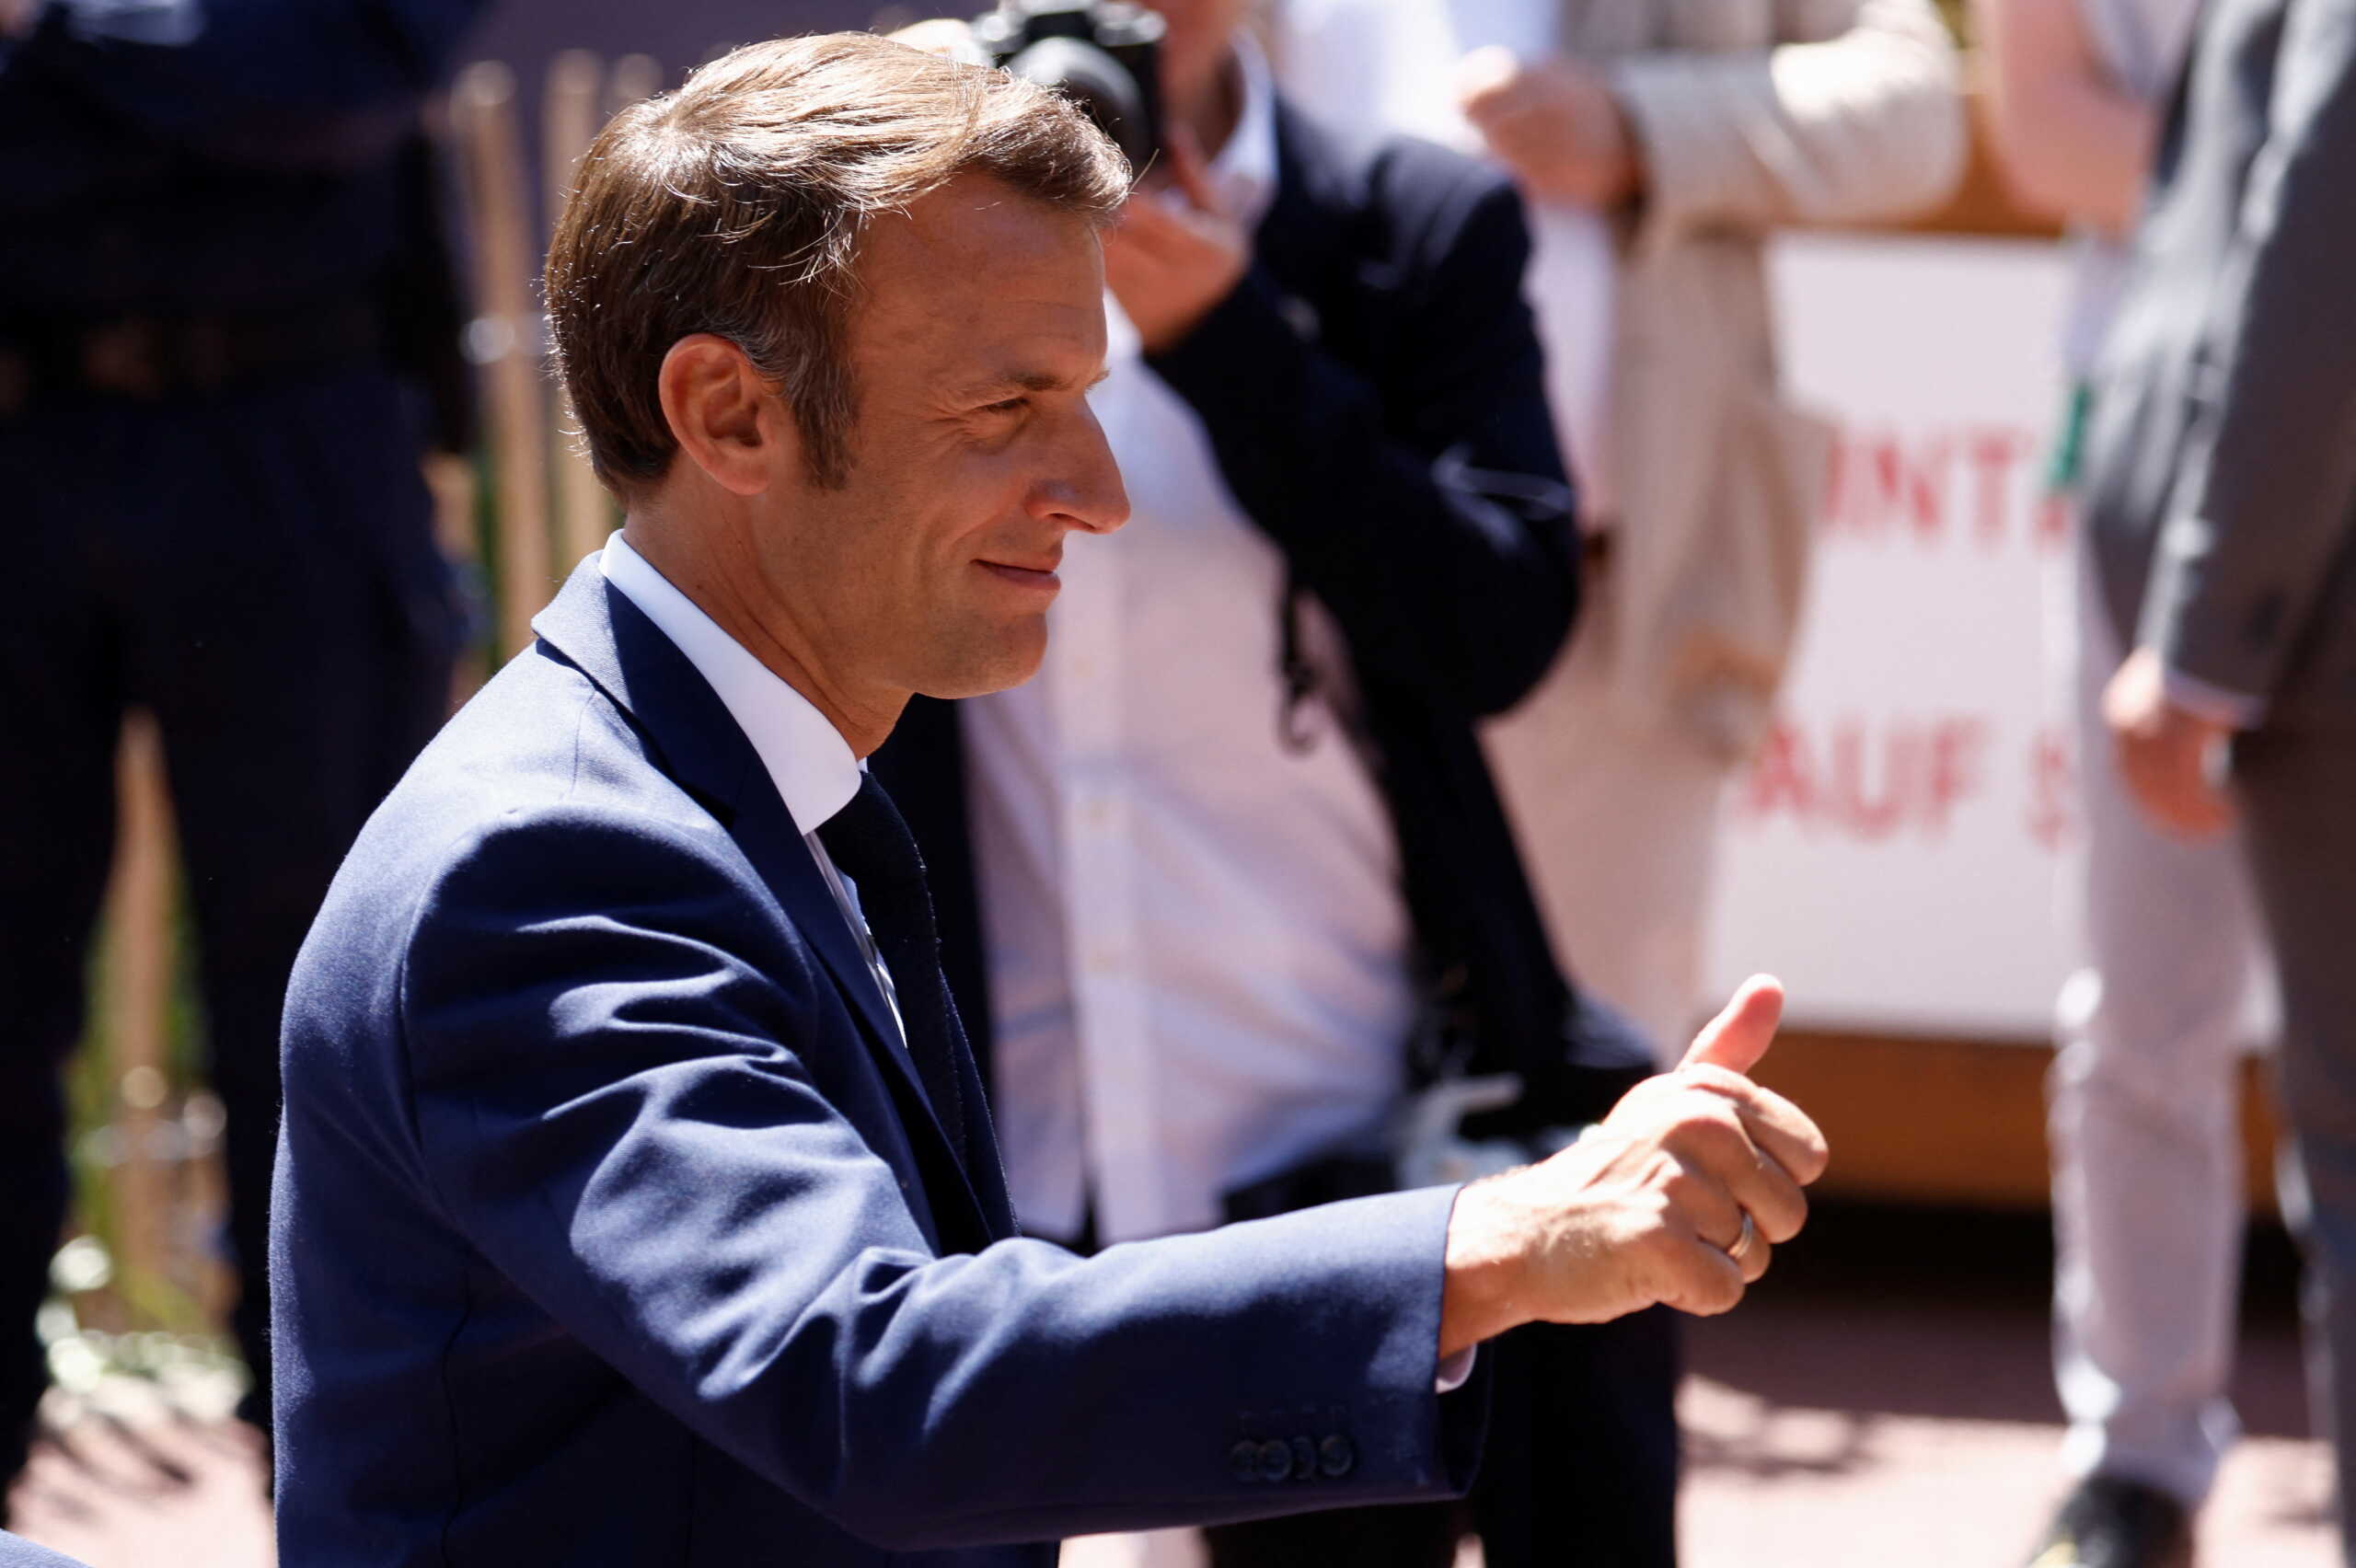 Βουλευτικές εκλογές στην Γαλλία: 44 έδρες μακριά από την απόλυτη πλειοψηφία ο Μακρόν – Τα σενάρια συνεργασίας